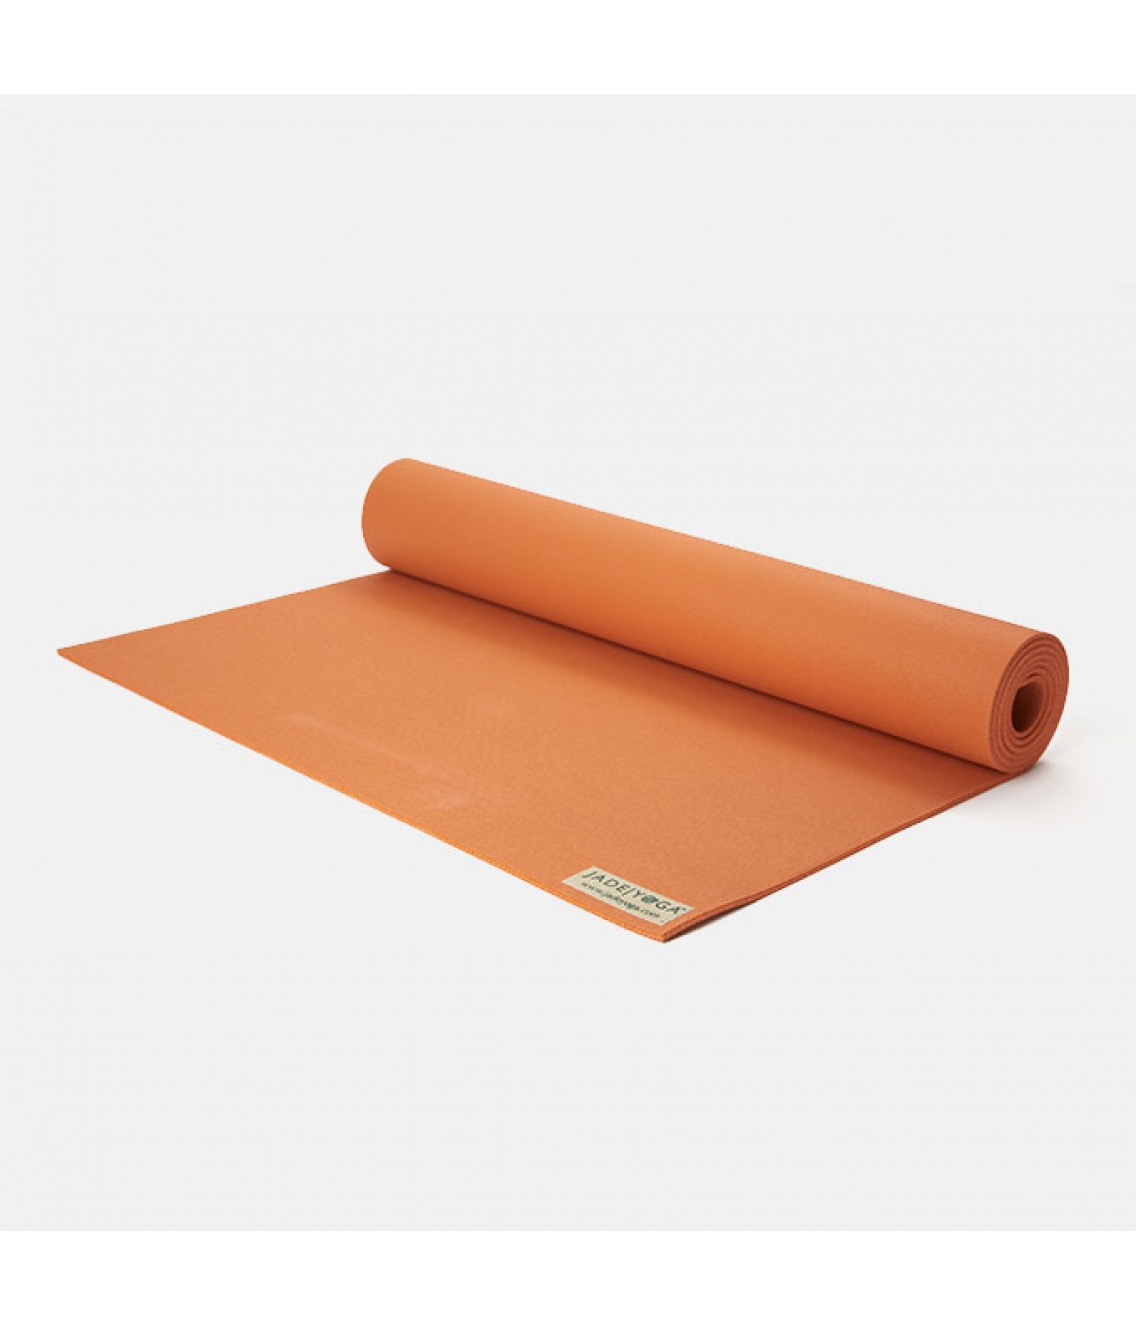 Каучуковый коврик Jade Harmony 173*60*0,5 см - Оранжевый